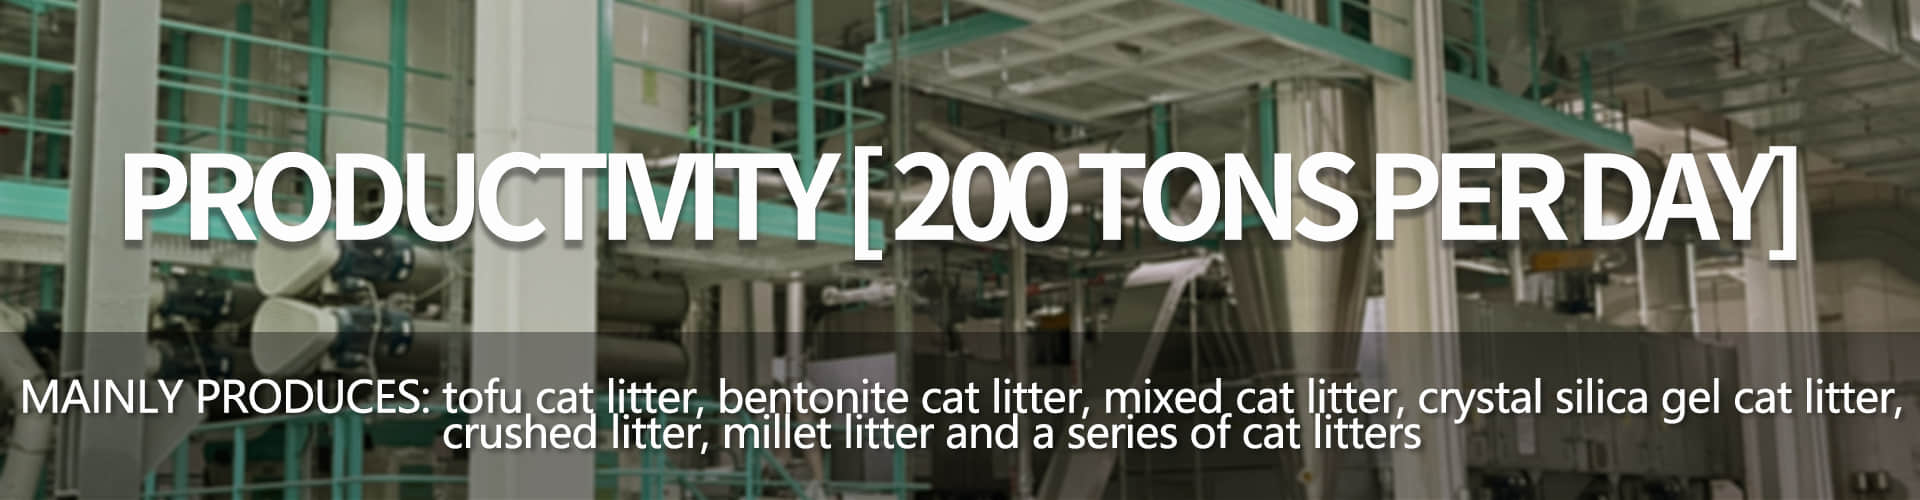 MeiMiao Cat Litter Manufacturer